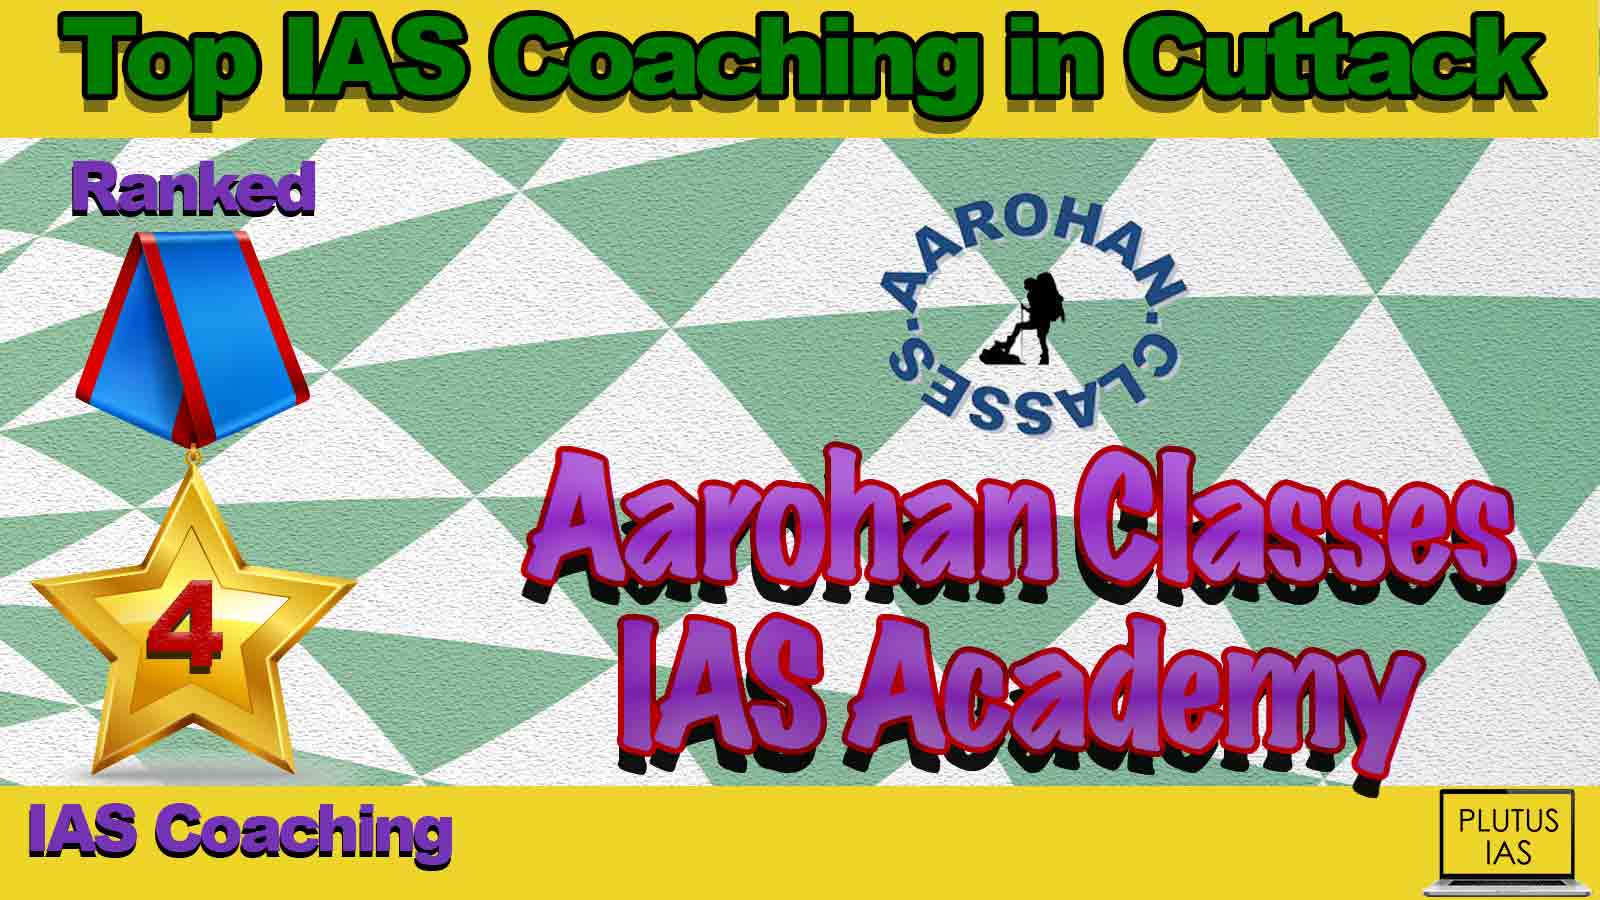 Best IAS Coaching in Cuttack